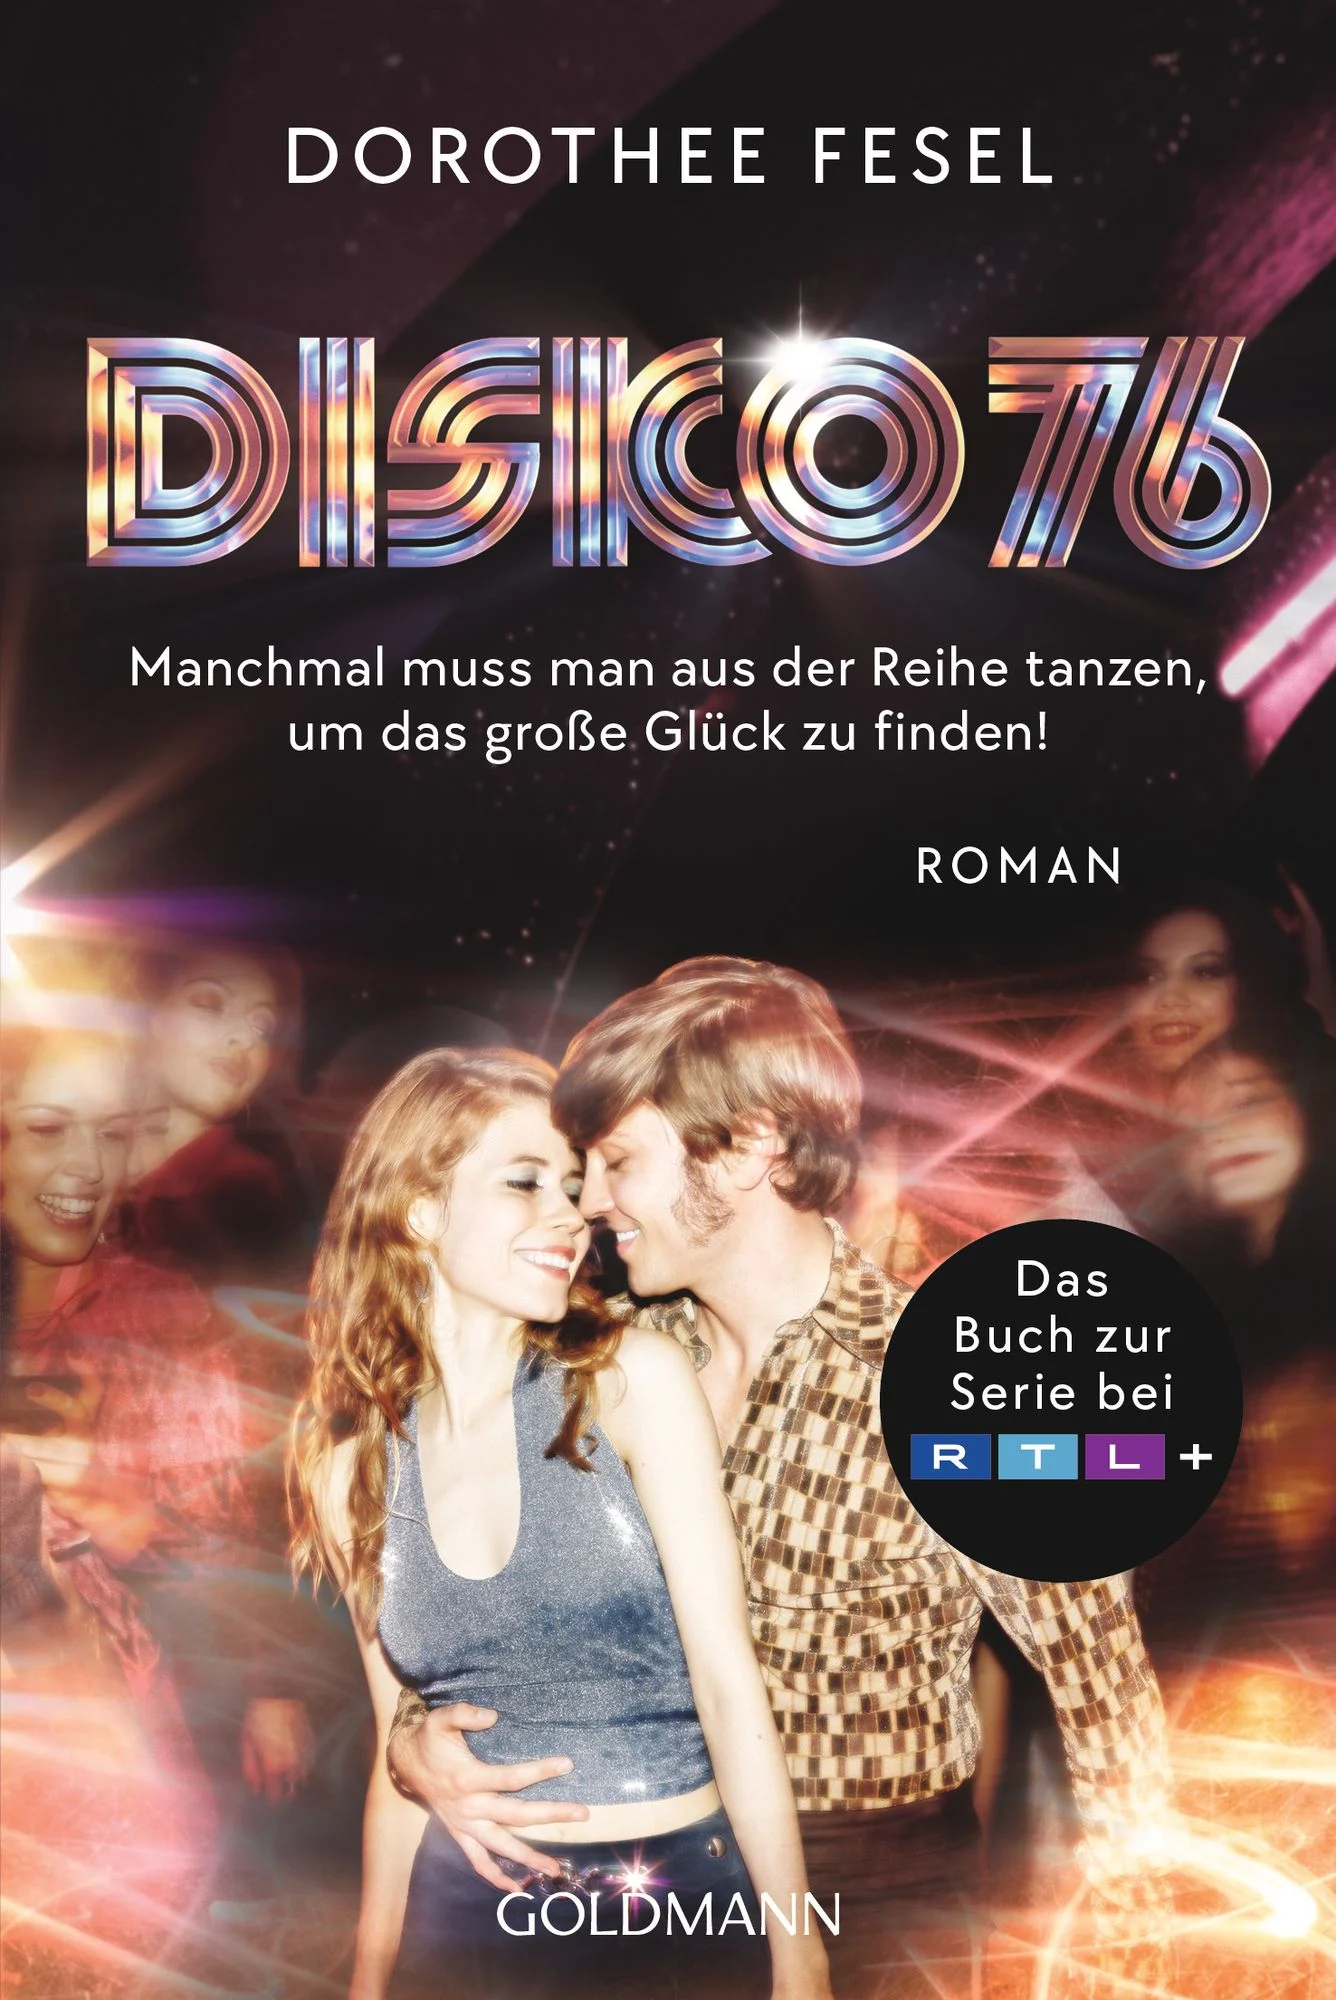 1 disko 76 taschenbuch dorothee fesel